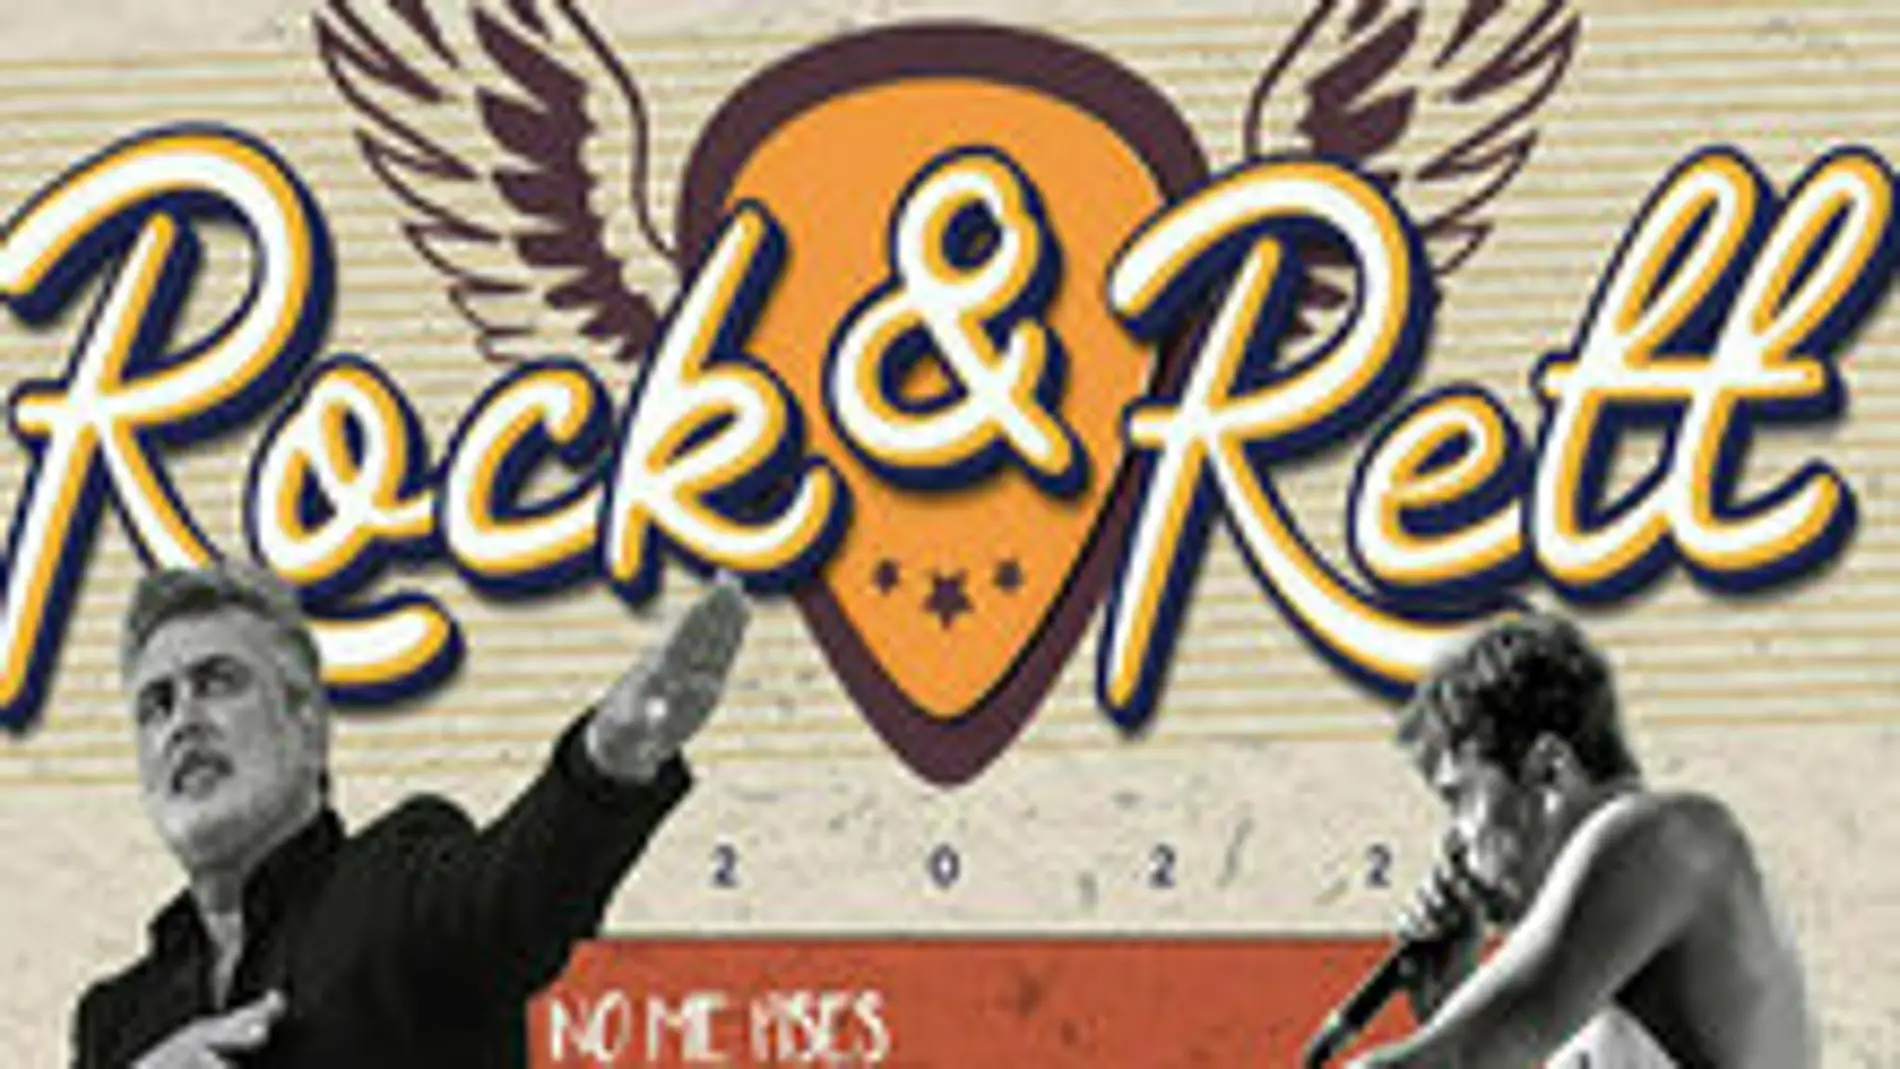 El I Concierto Solidario Rock & Rett tiene lugar los días 1 y 2 de octubre en Badajoz